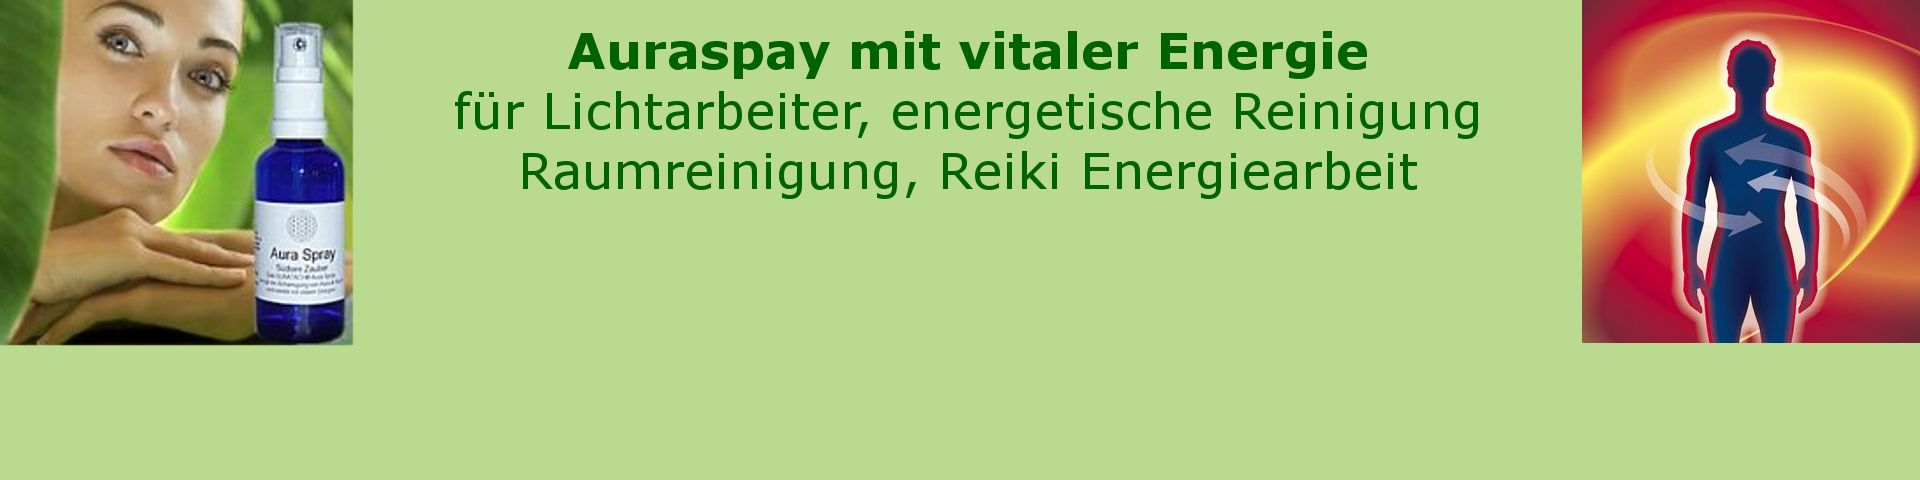 Aura Spray mit Tachyonen Energie. Unterstützung für Energiearbeit, Reiki und Lichtarbeiter.